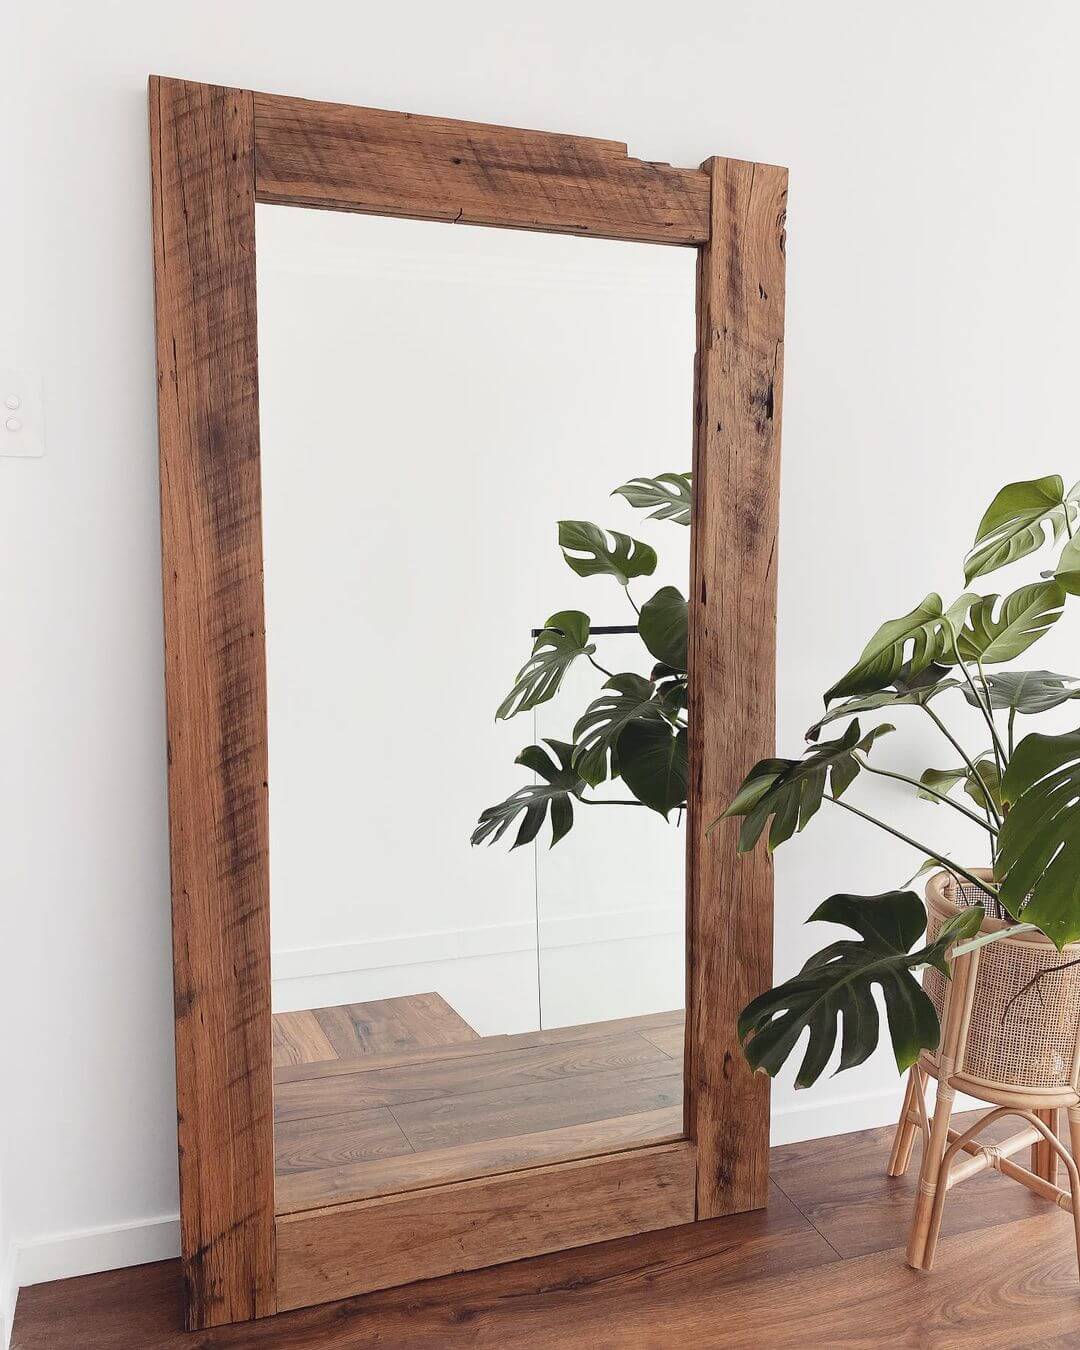 DIY Wooden Mirror Frame